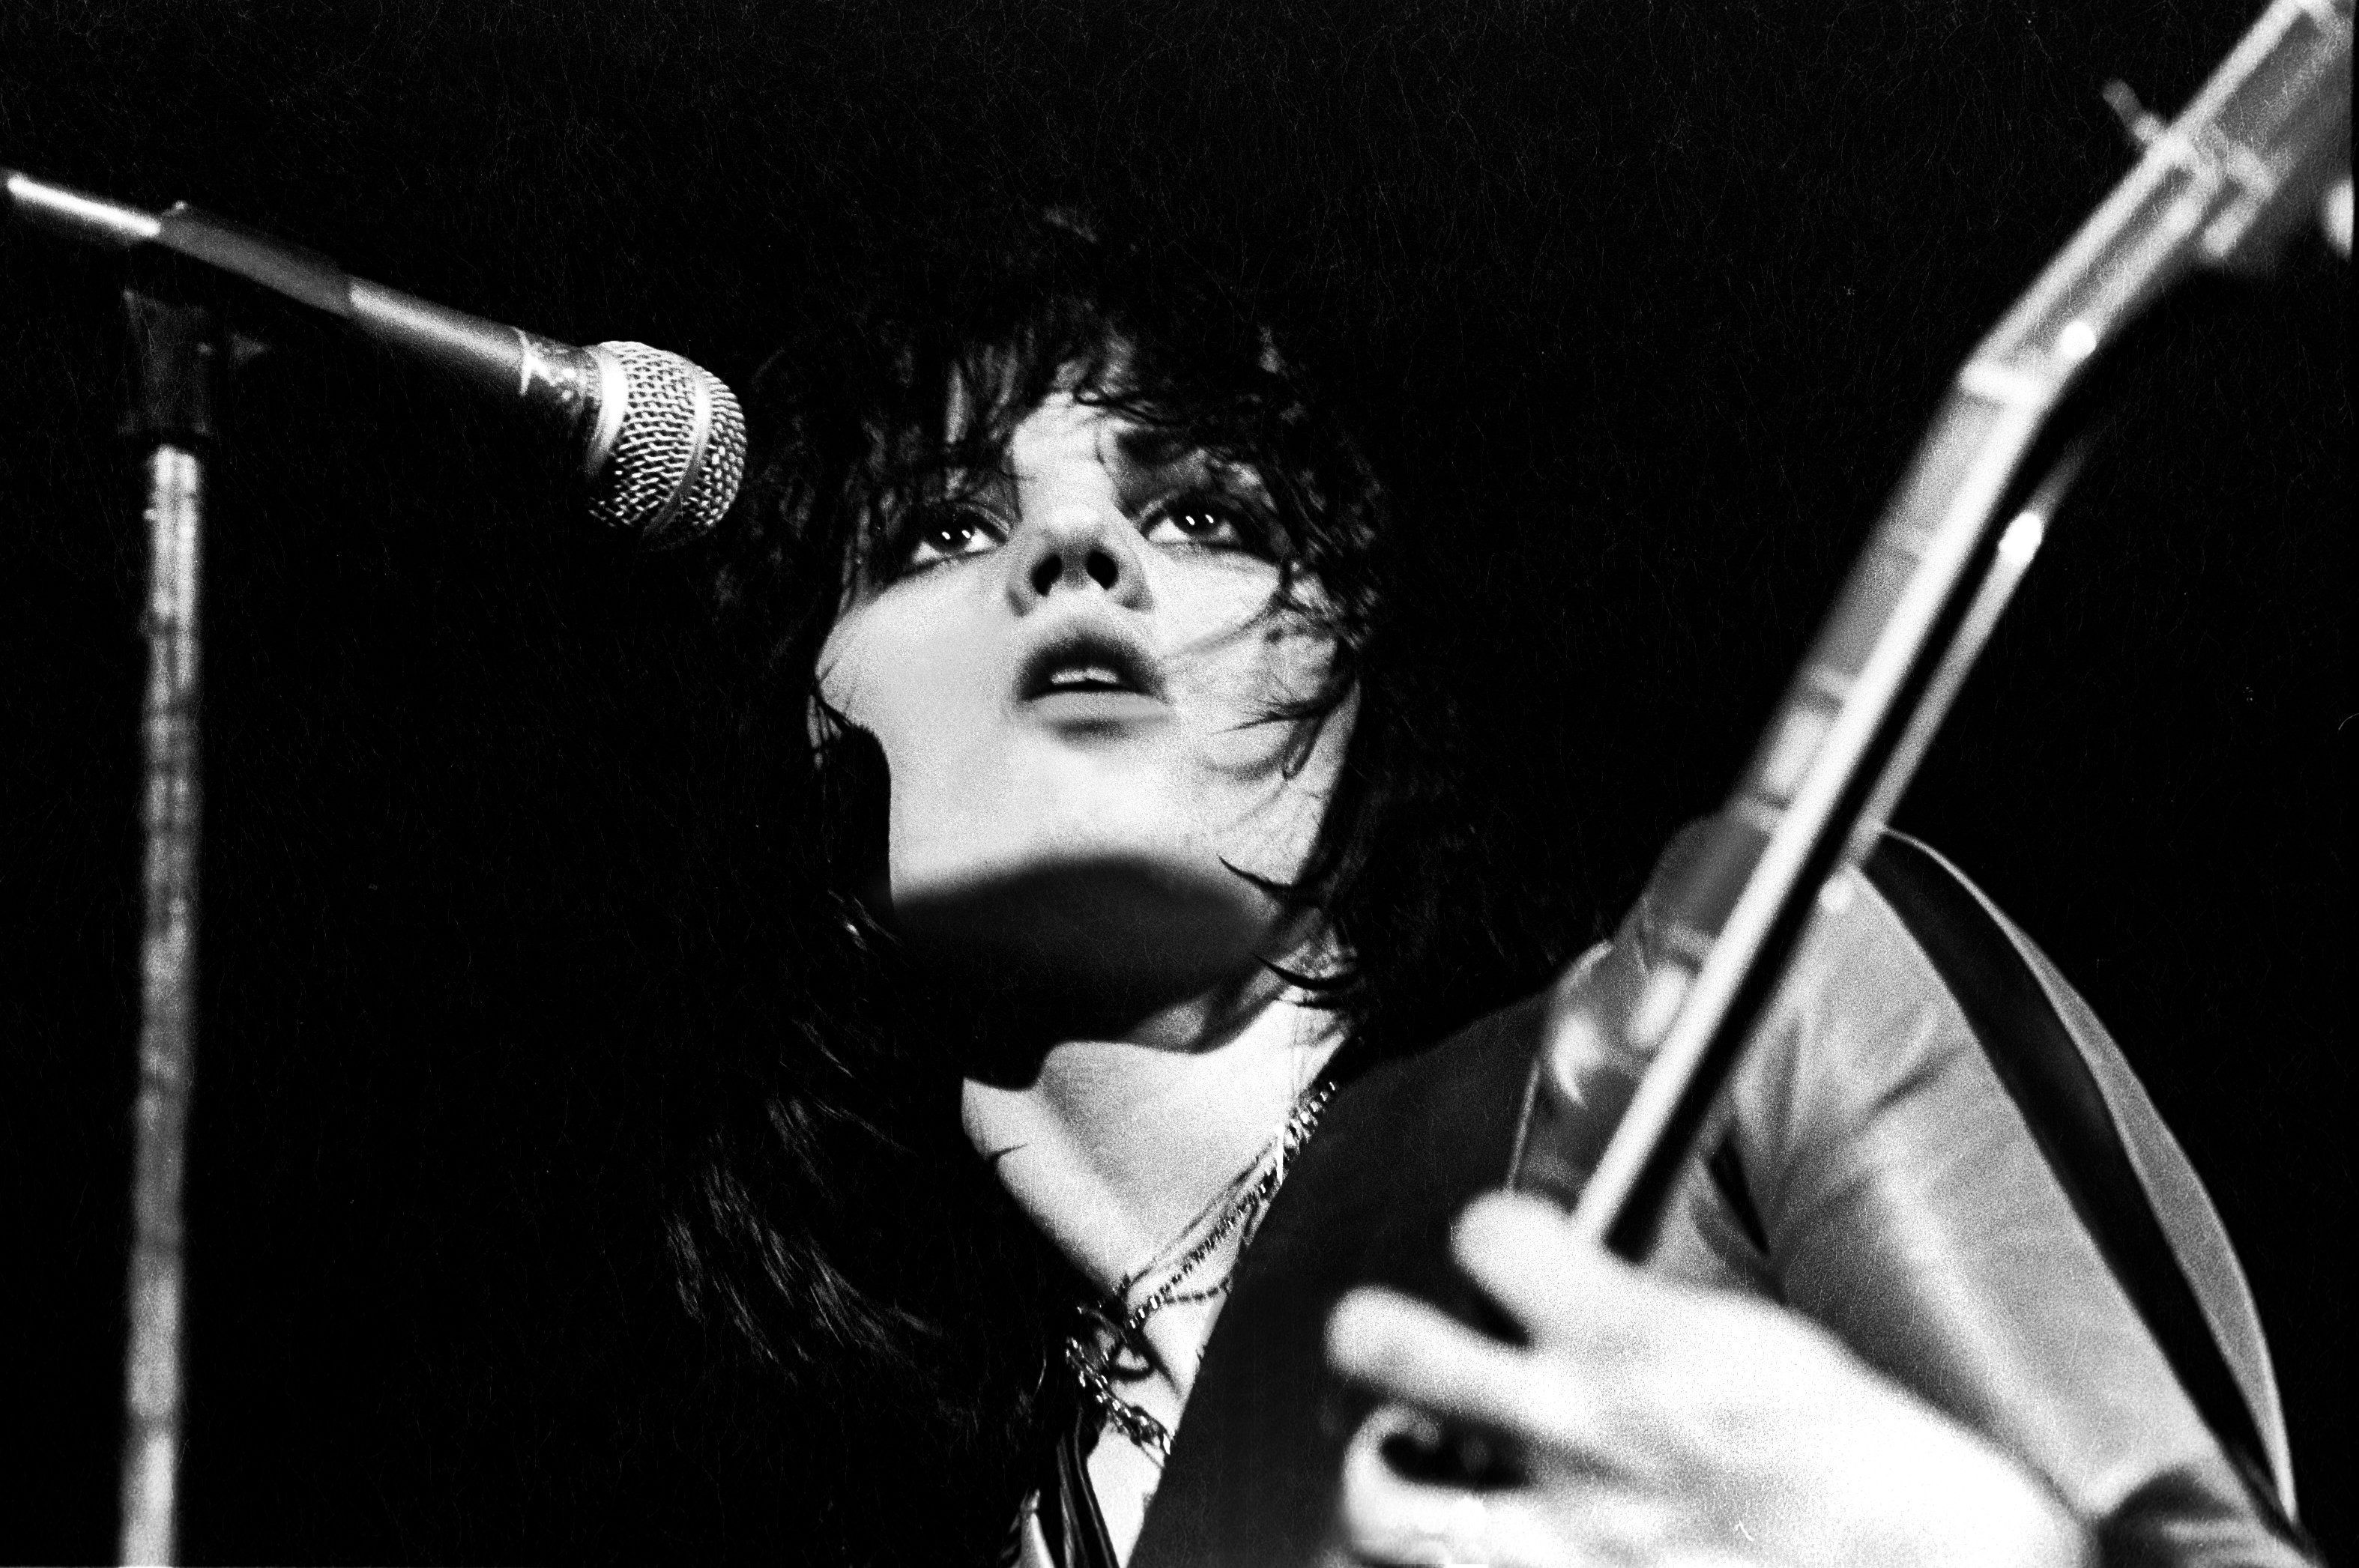 Joan Jett tocando la guitarra mientras se presenta en el escenario del Aragon Ballroom, Chicago, Illinois, el 25 de marzo de 1977. | Foto: Getty Images